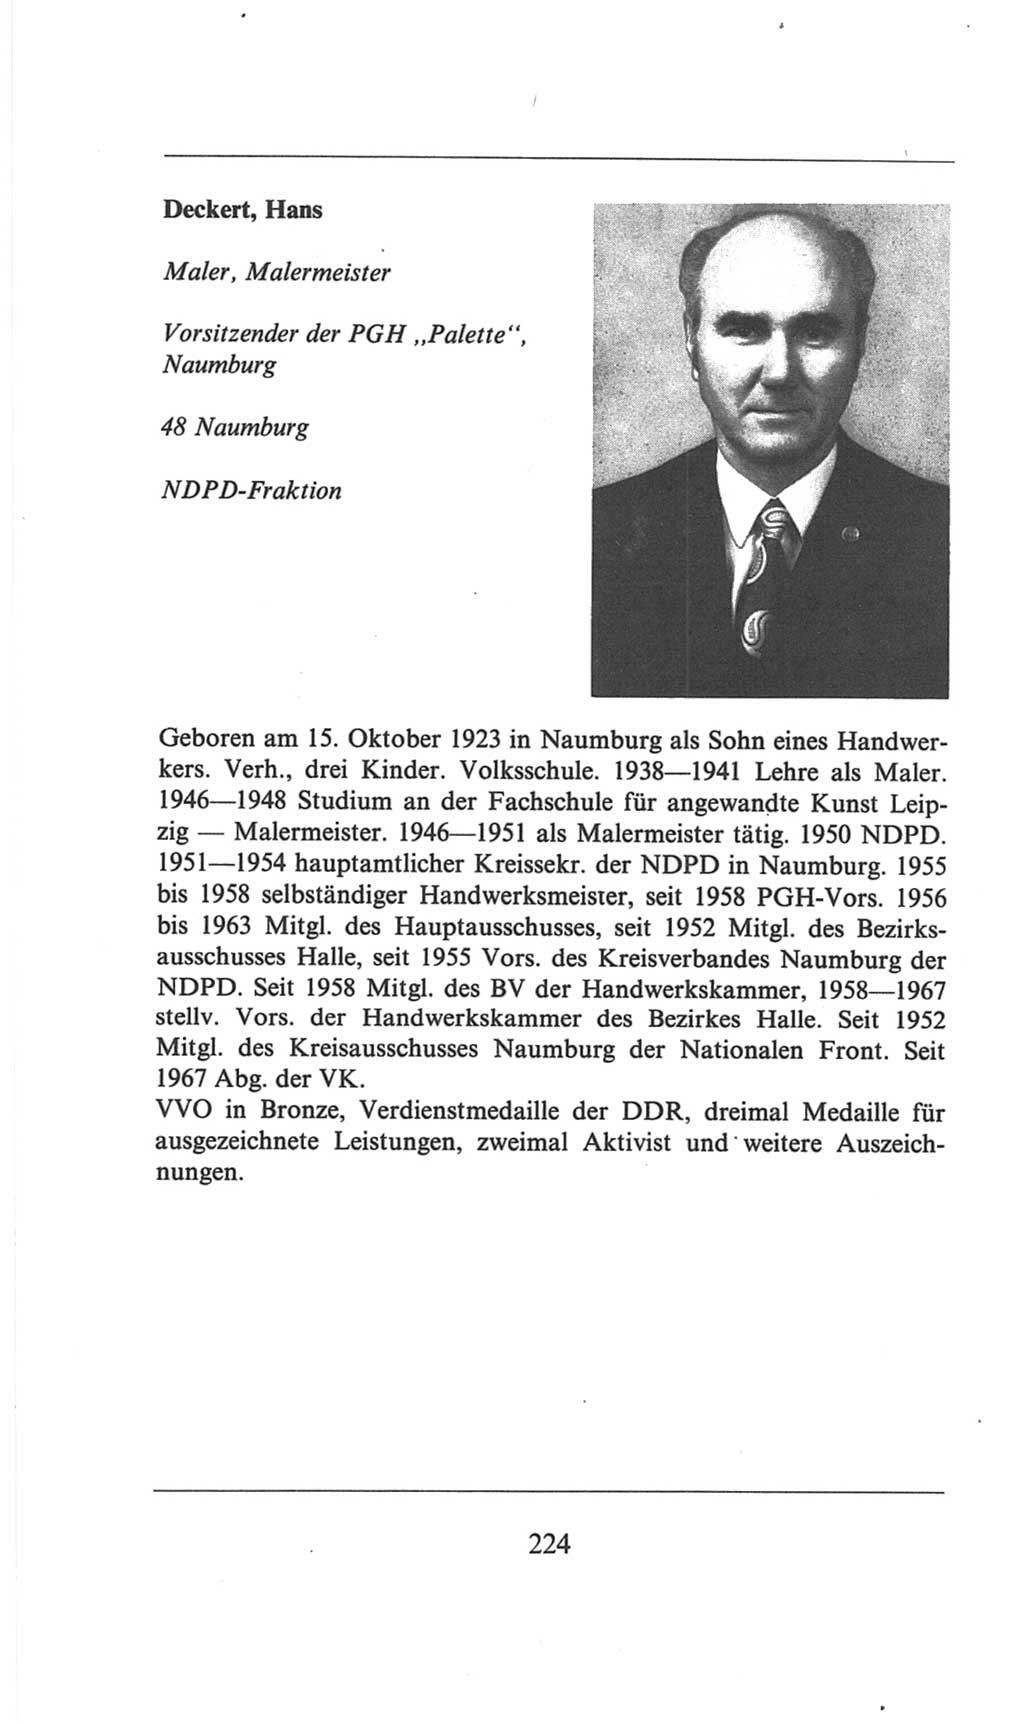 Volkskammer (VK) der Deutschen Demokratischen Republik (DDR), 6. Wahlperiode 1971-1976, Seite 224 (VK. DDR 6. WP. 1971-1976, S. 224)